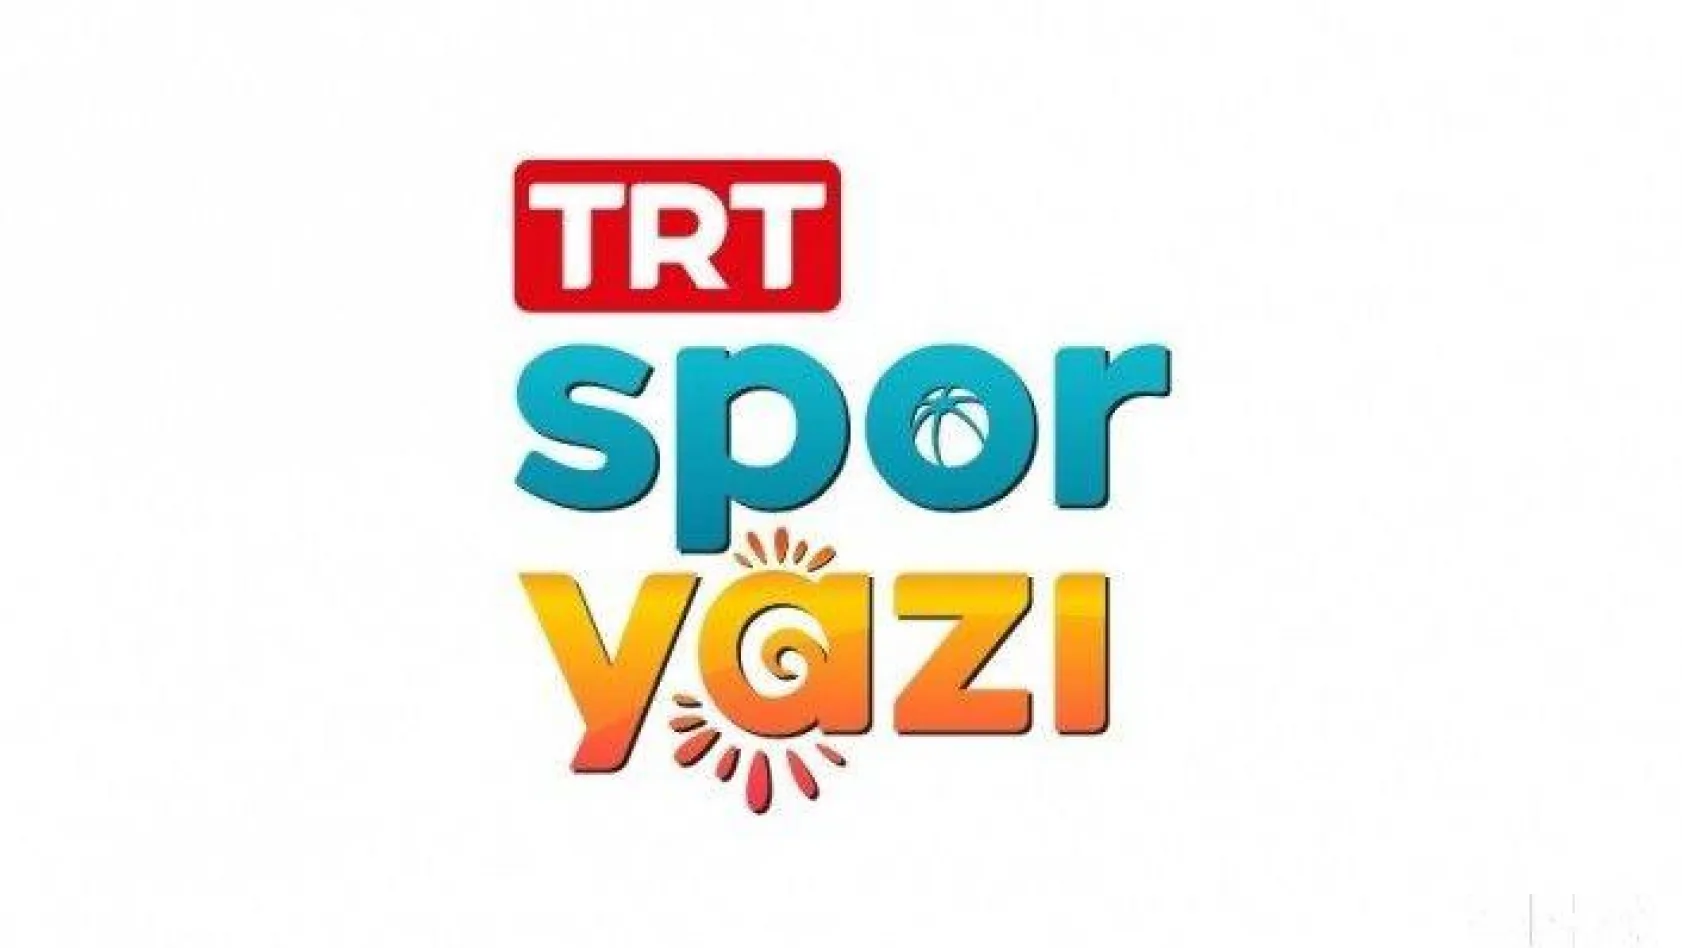 Bu yaz 'TRT Spor Yazı' olacak